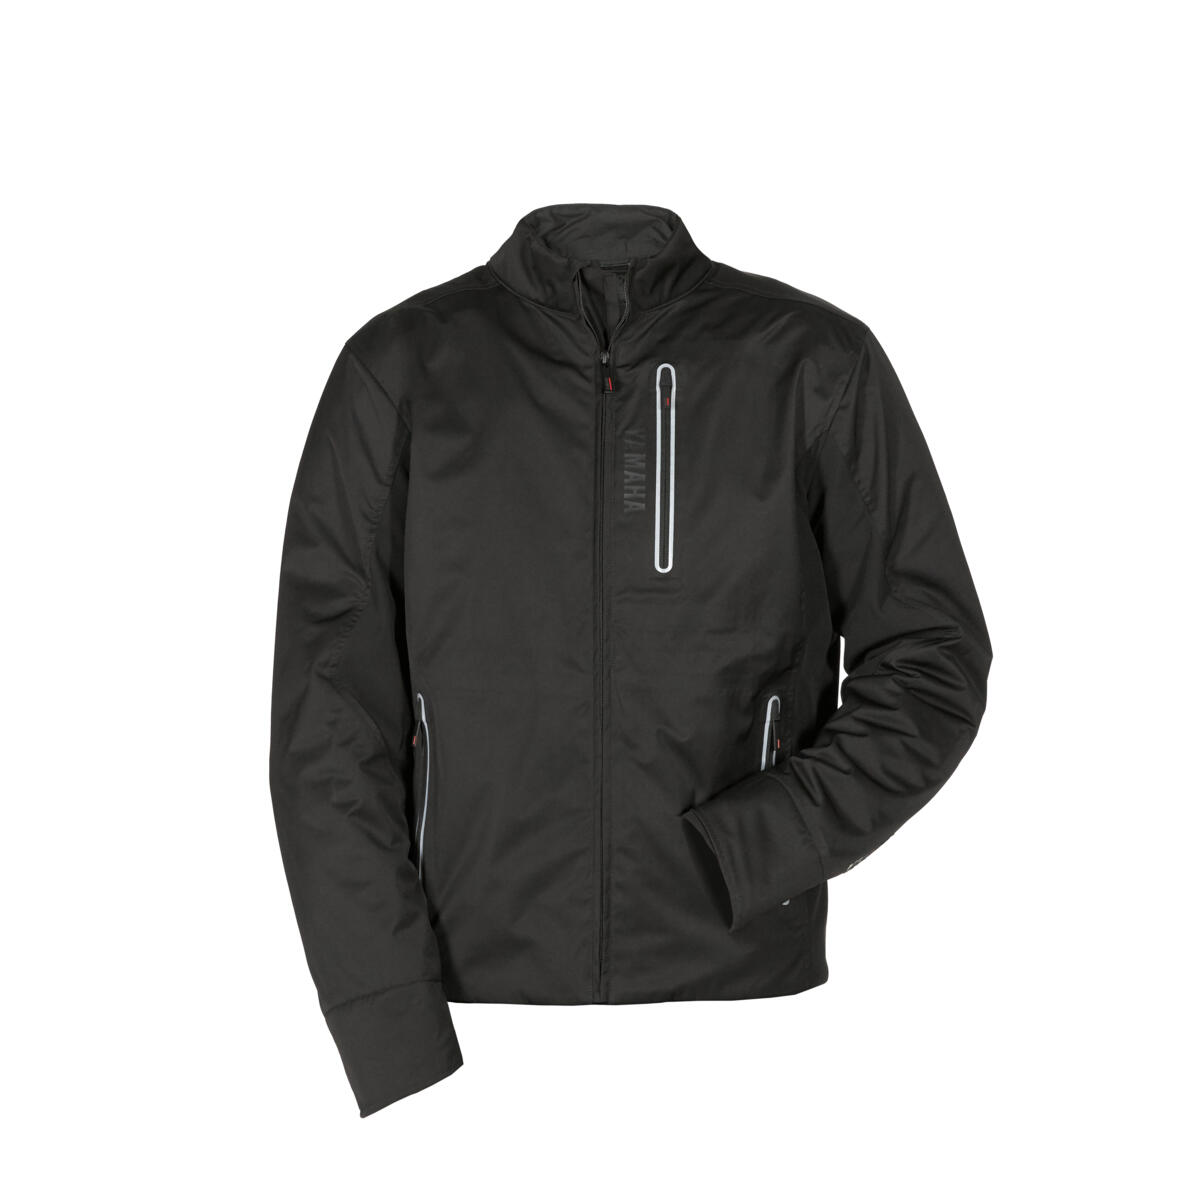 2 in 1 Jacke aus dünnem Nylon, mit Softshell-Seitenteilen für Flexibilität. Die Jacke kann mit der Touring-Hose kombiniert werden, um ein gesamtes Outfit zu kreieren. Perfekte Sport-Touring-Jacke für alle Jahreszeiten, die Sie bei allen Arten von Wetterbedingungen schützt.